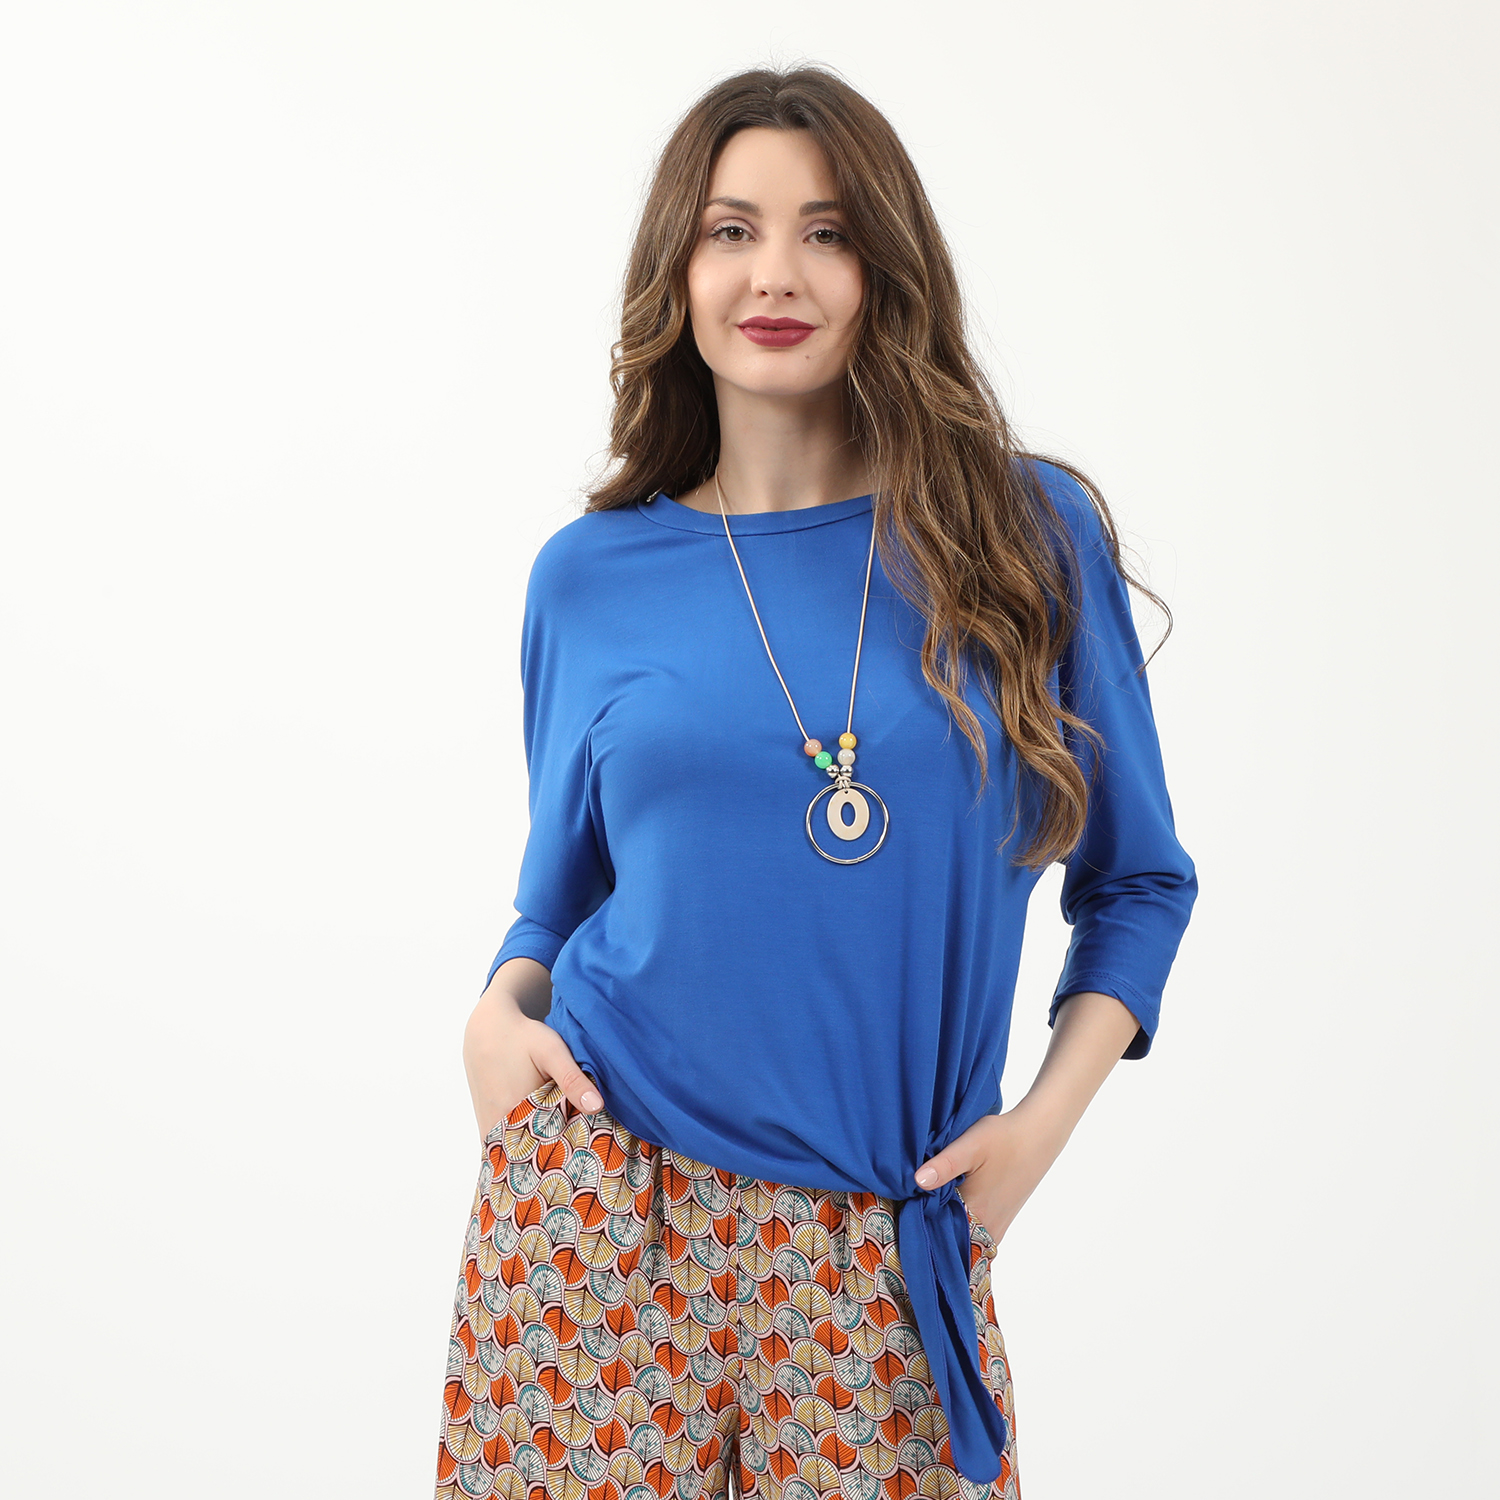 Γυναικεία/Ρούχα/Μπλούζες/Μακρυμάνικες ATTRATTIVO - Γυναικεία μπλούζα και κολιέ ATTRATTIVO μπλε